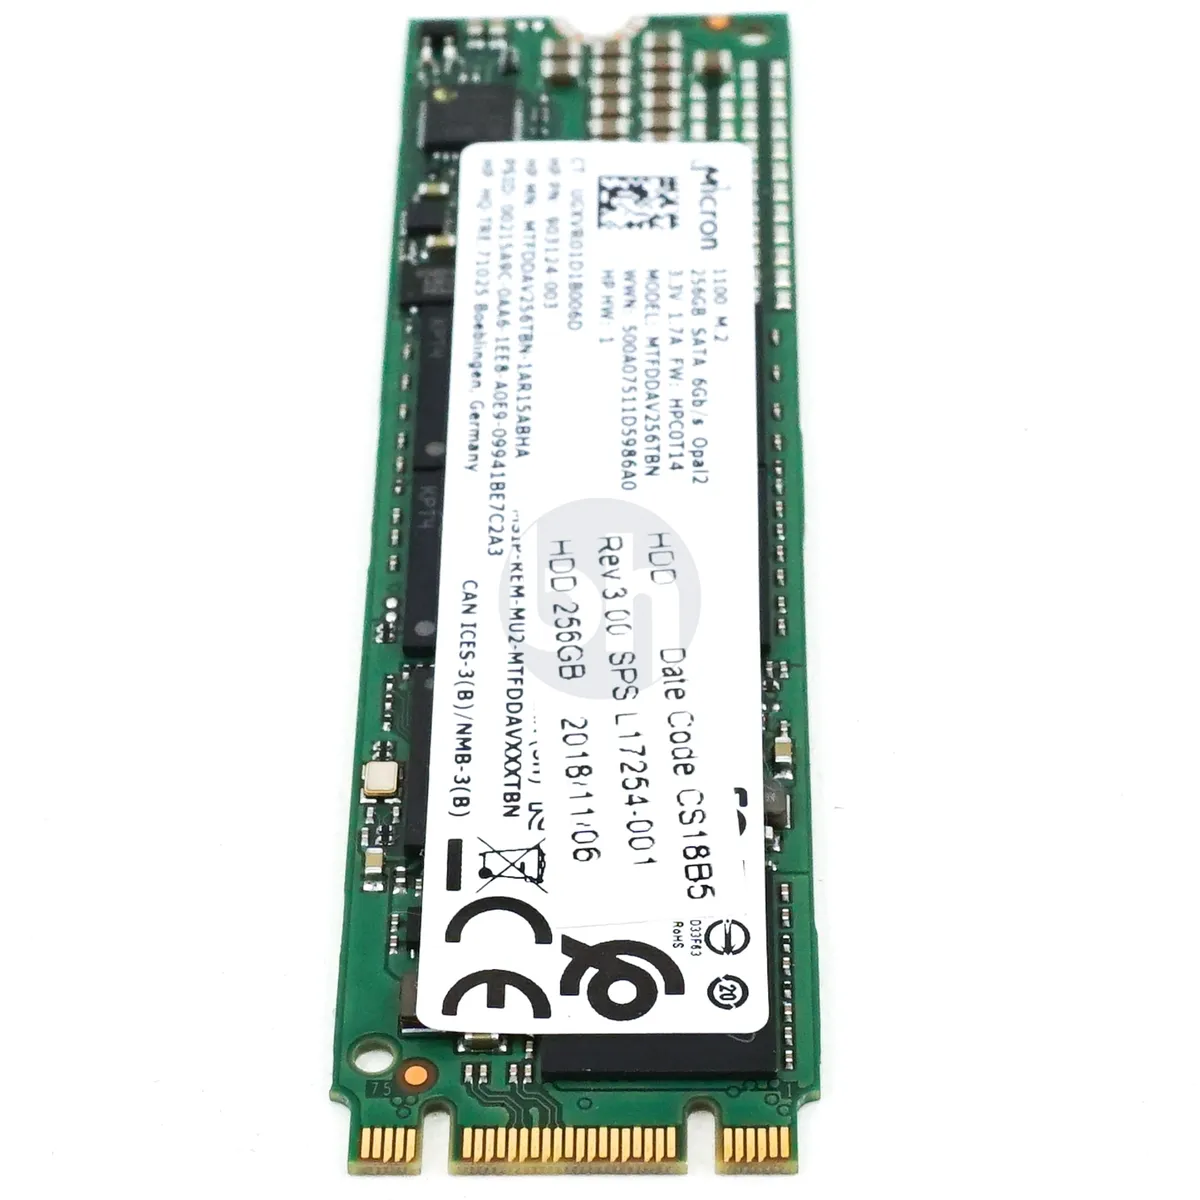 HP (903124-003) - 256GB M.2 2280 B+M SATA 6Gbps SSD L17254-001